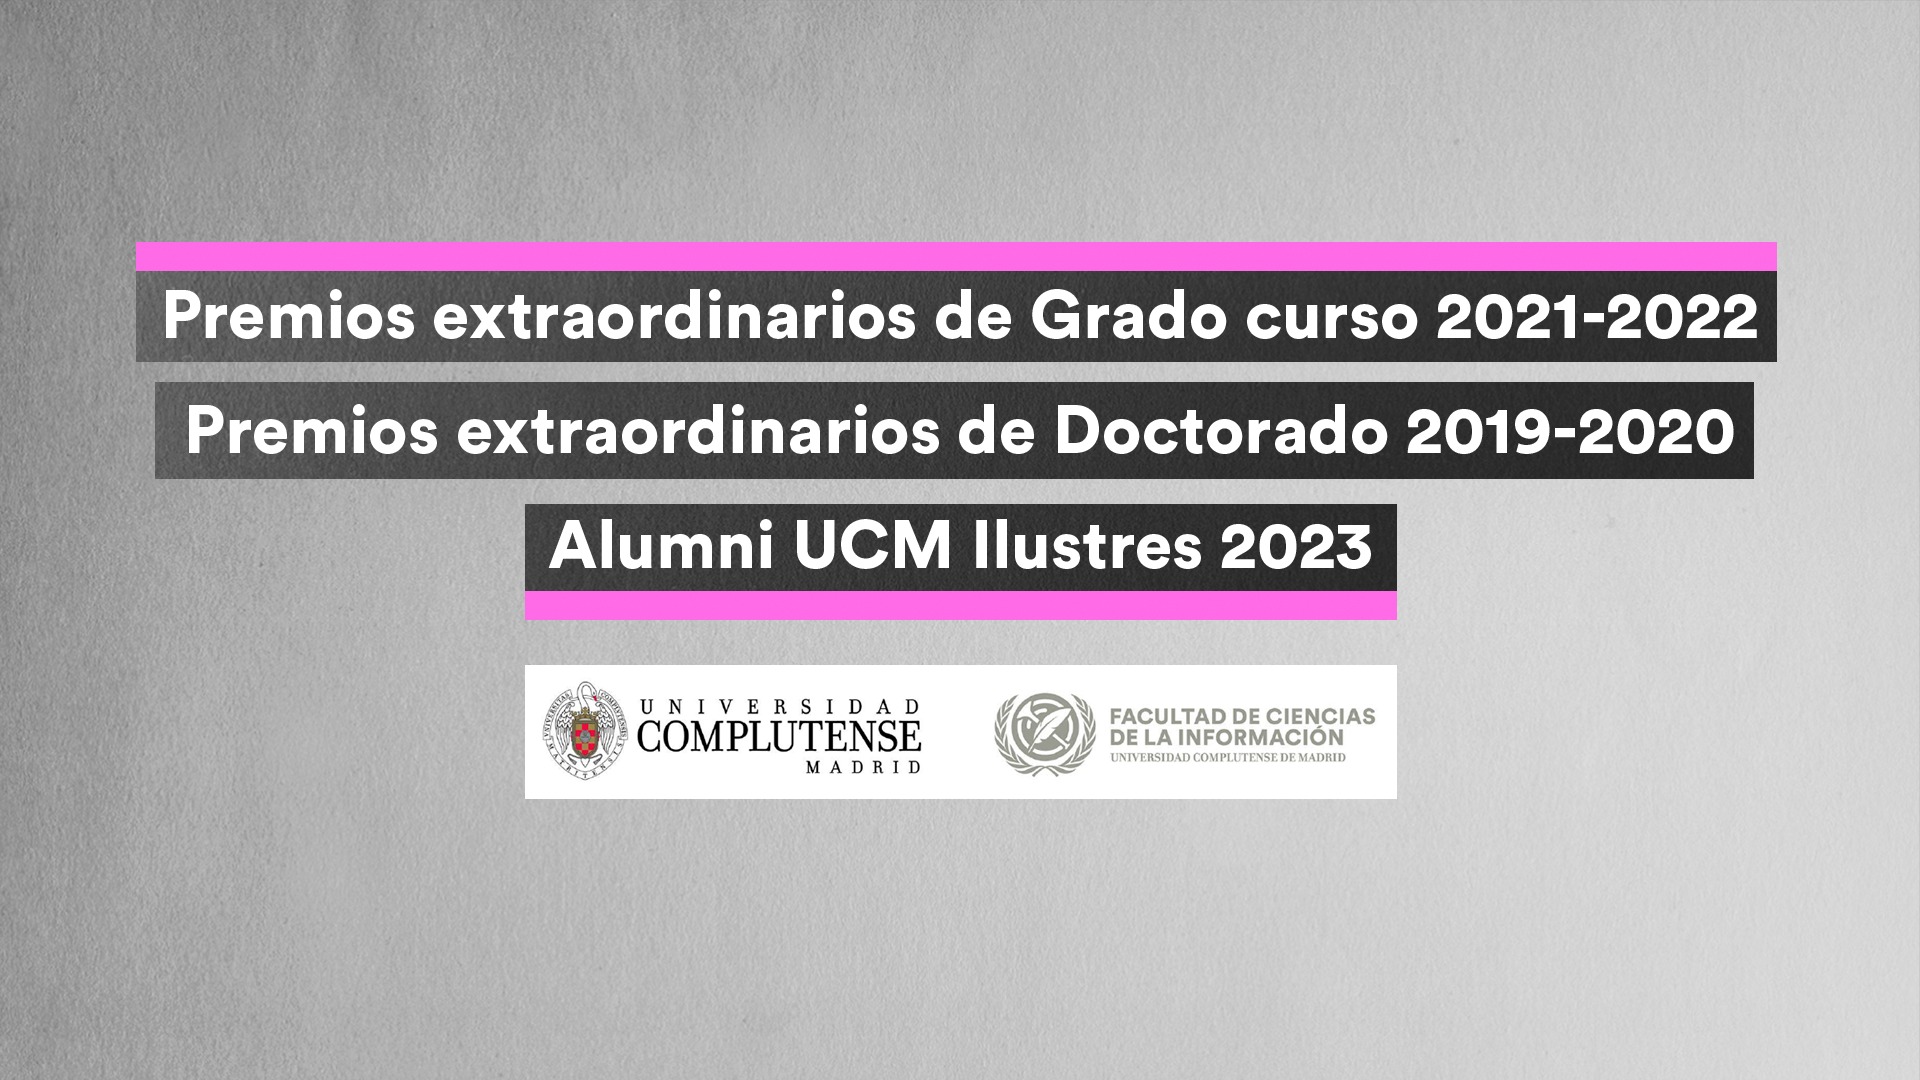 Premios Extraordinarios de Grado 2021-2022 y Doctorado 2019-2020